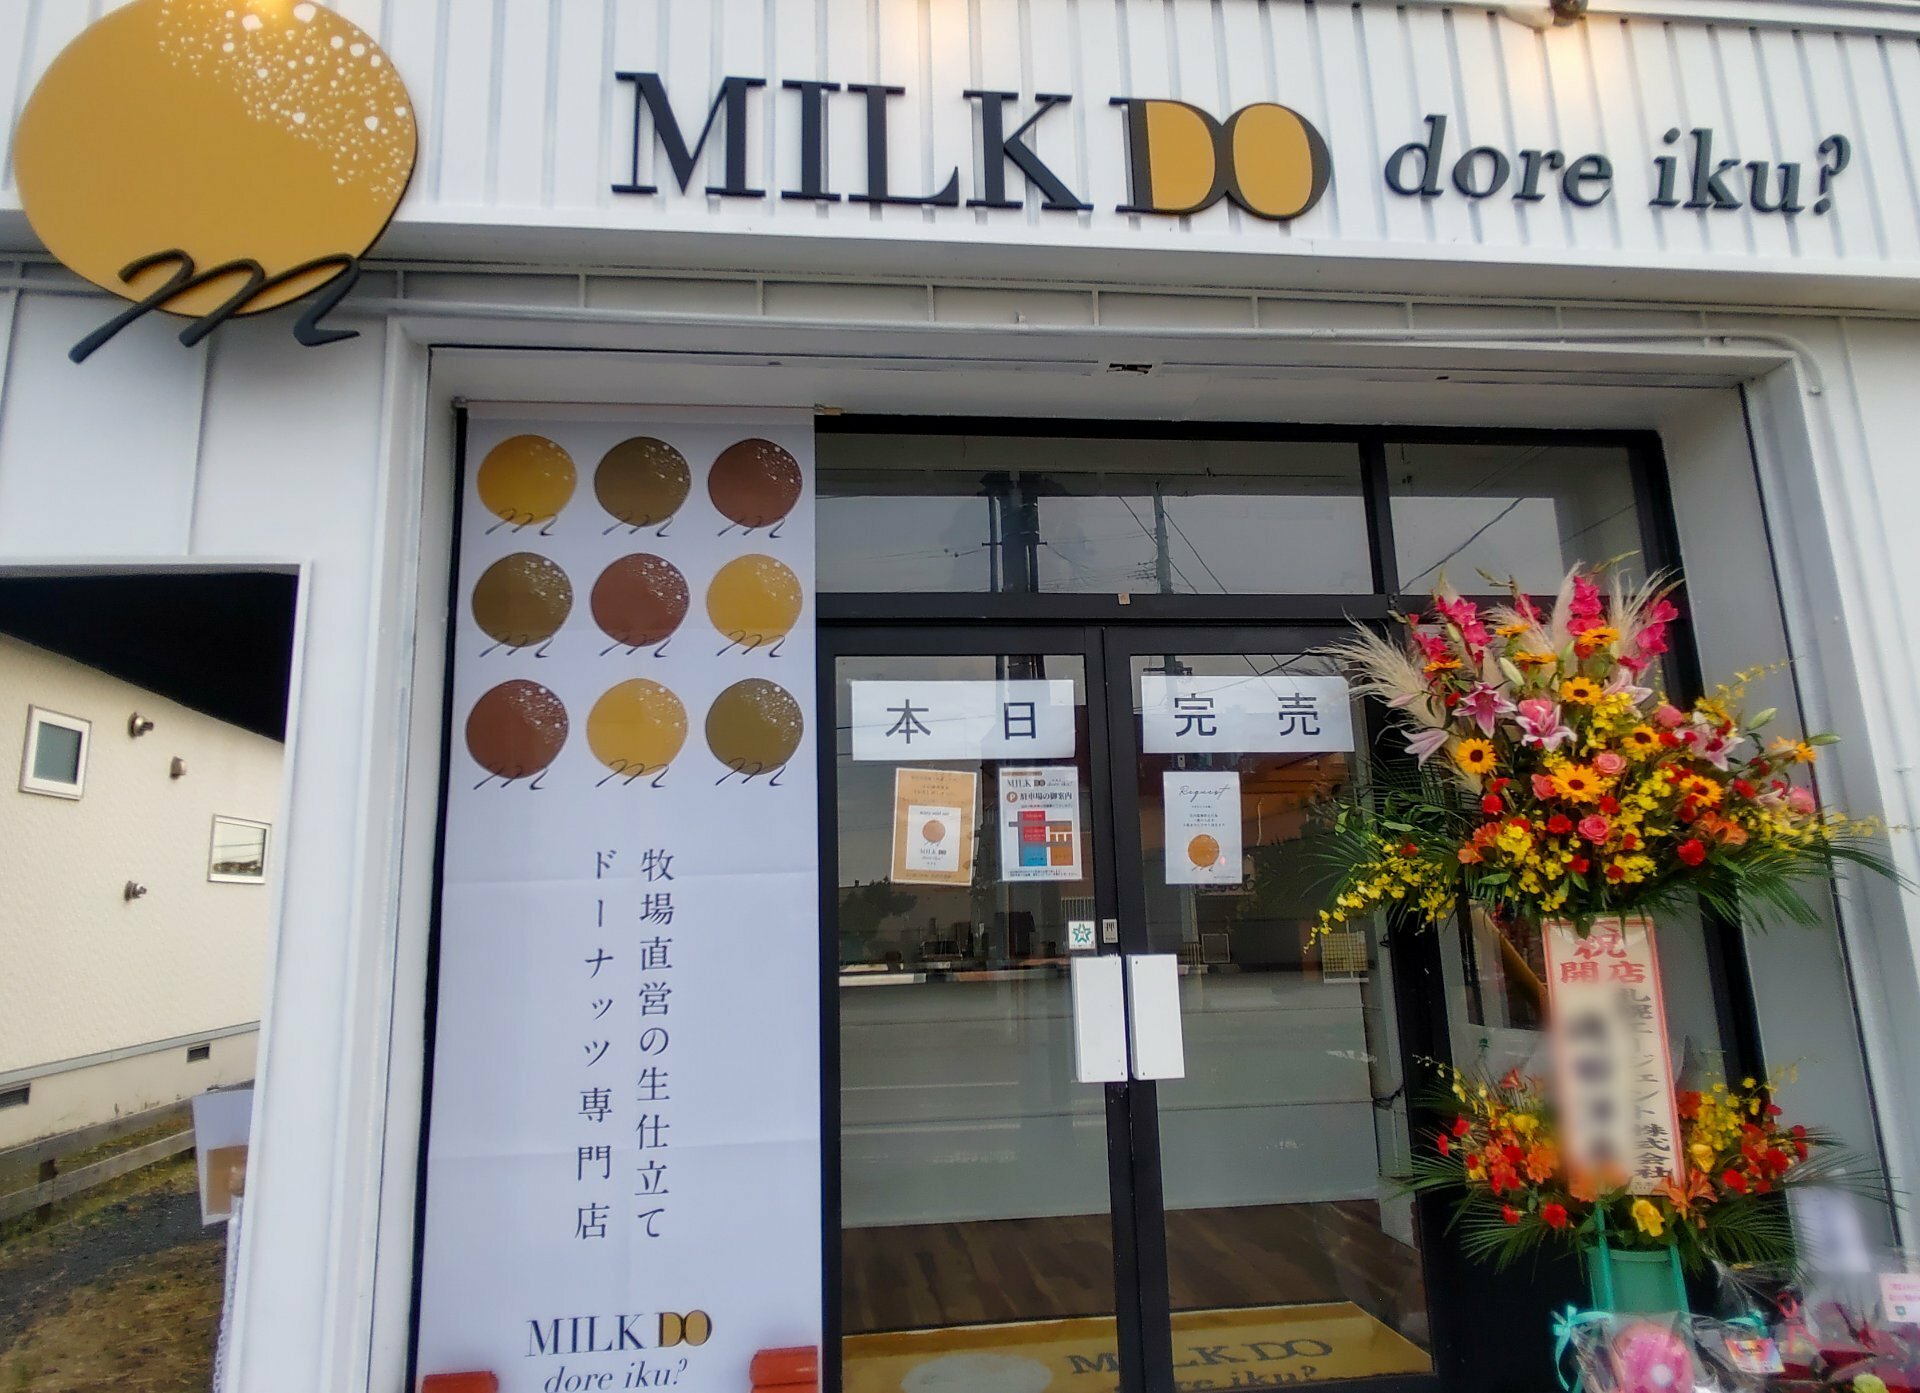 *2023年10月12日にオープンした「MILK DO dore iku? 北見店」の写真です。